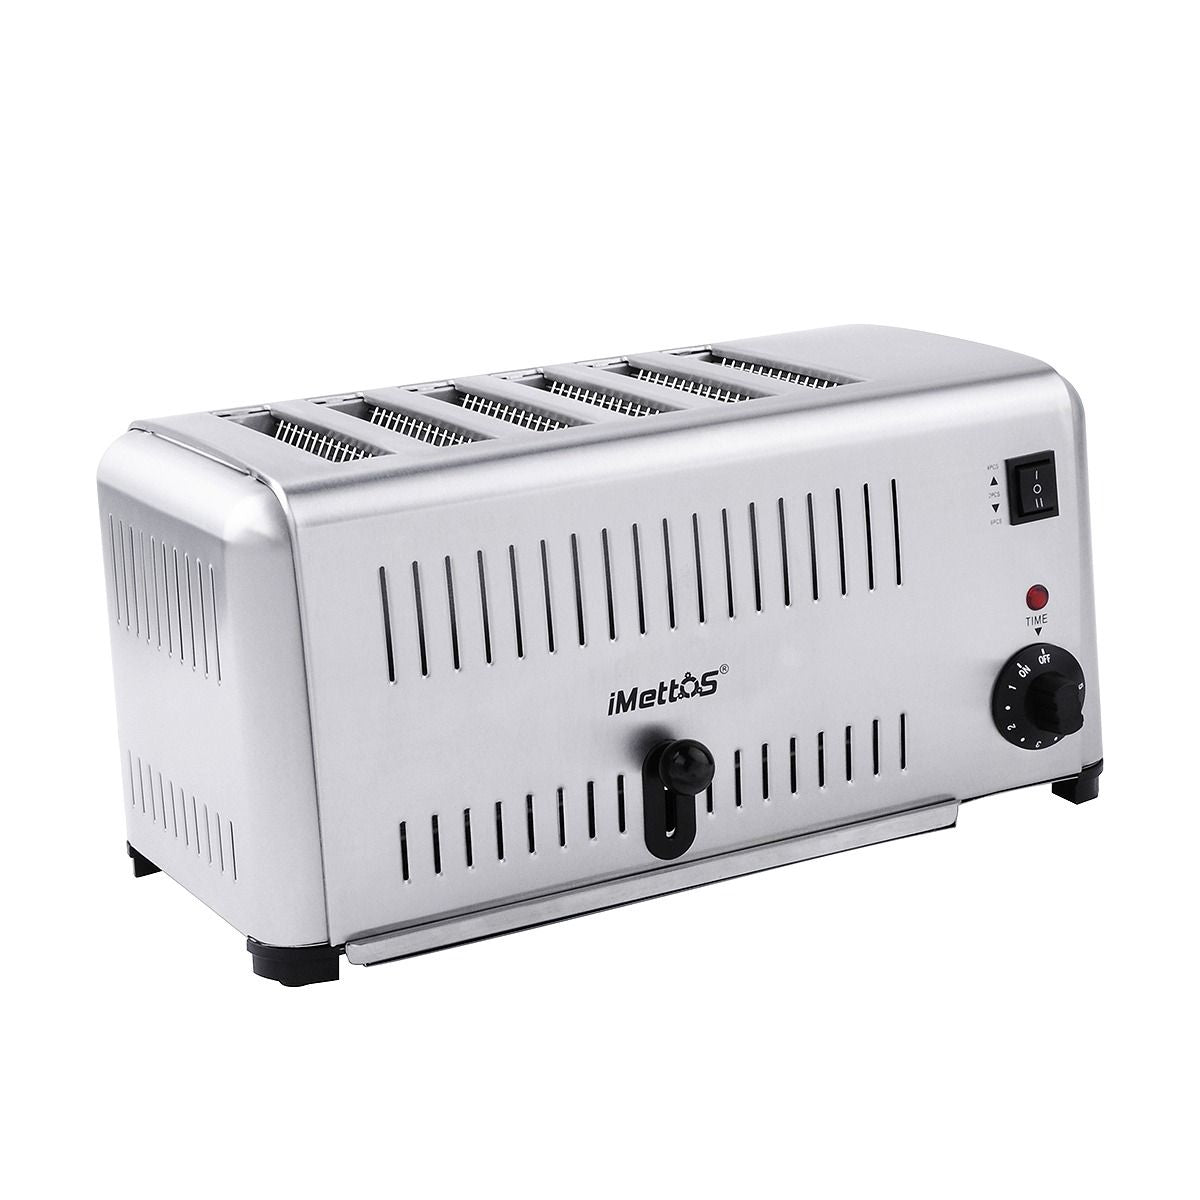 iMettos 6 Slice Toaster - 601002 Burco iMettos   